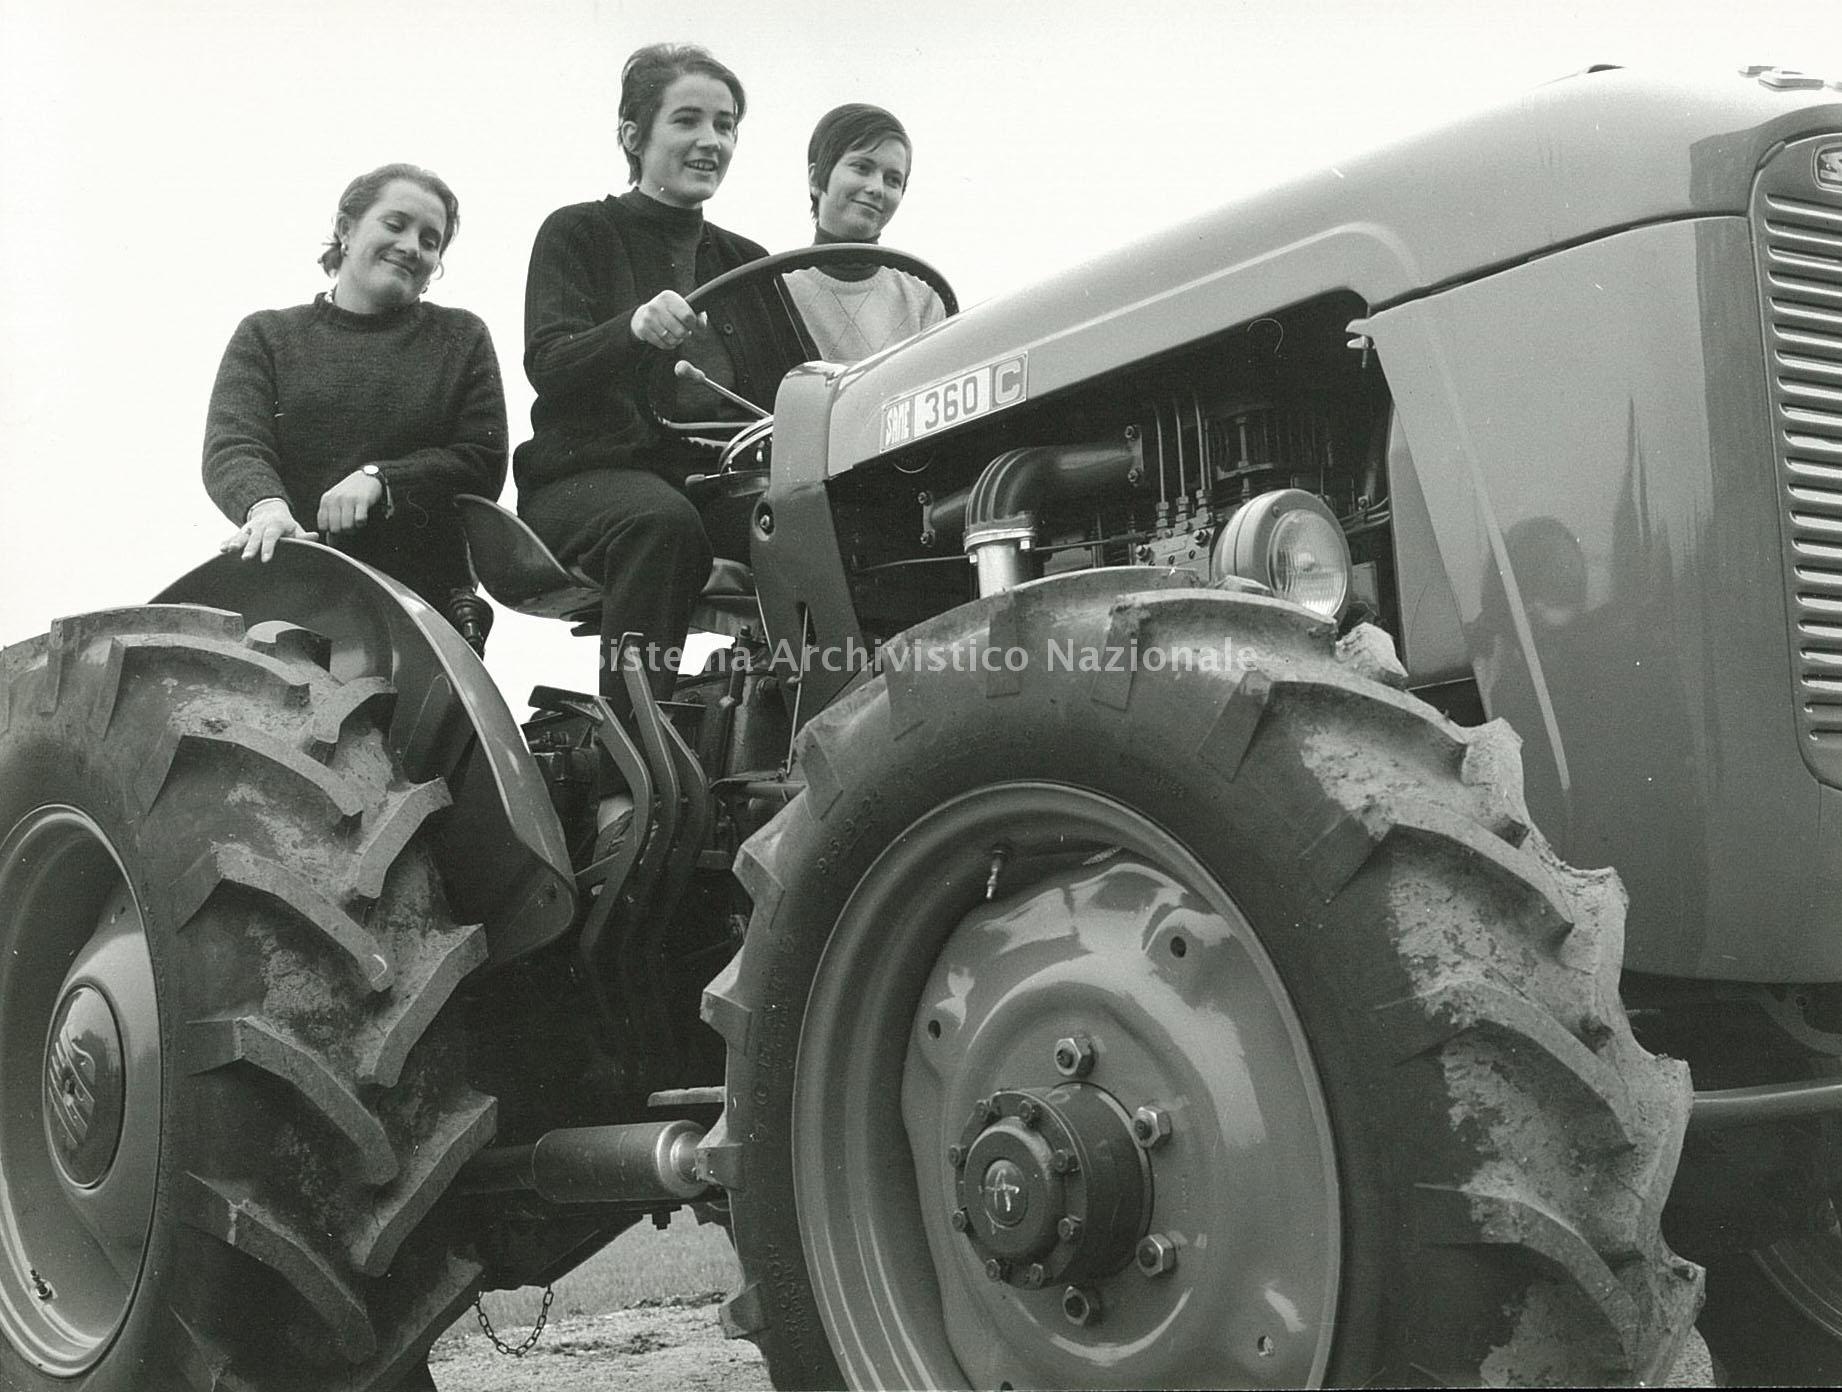 Donne e istruzione tecnica agraria, le prime perite (1950-1970)